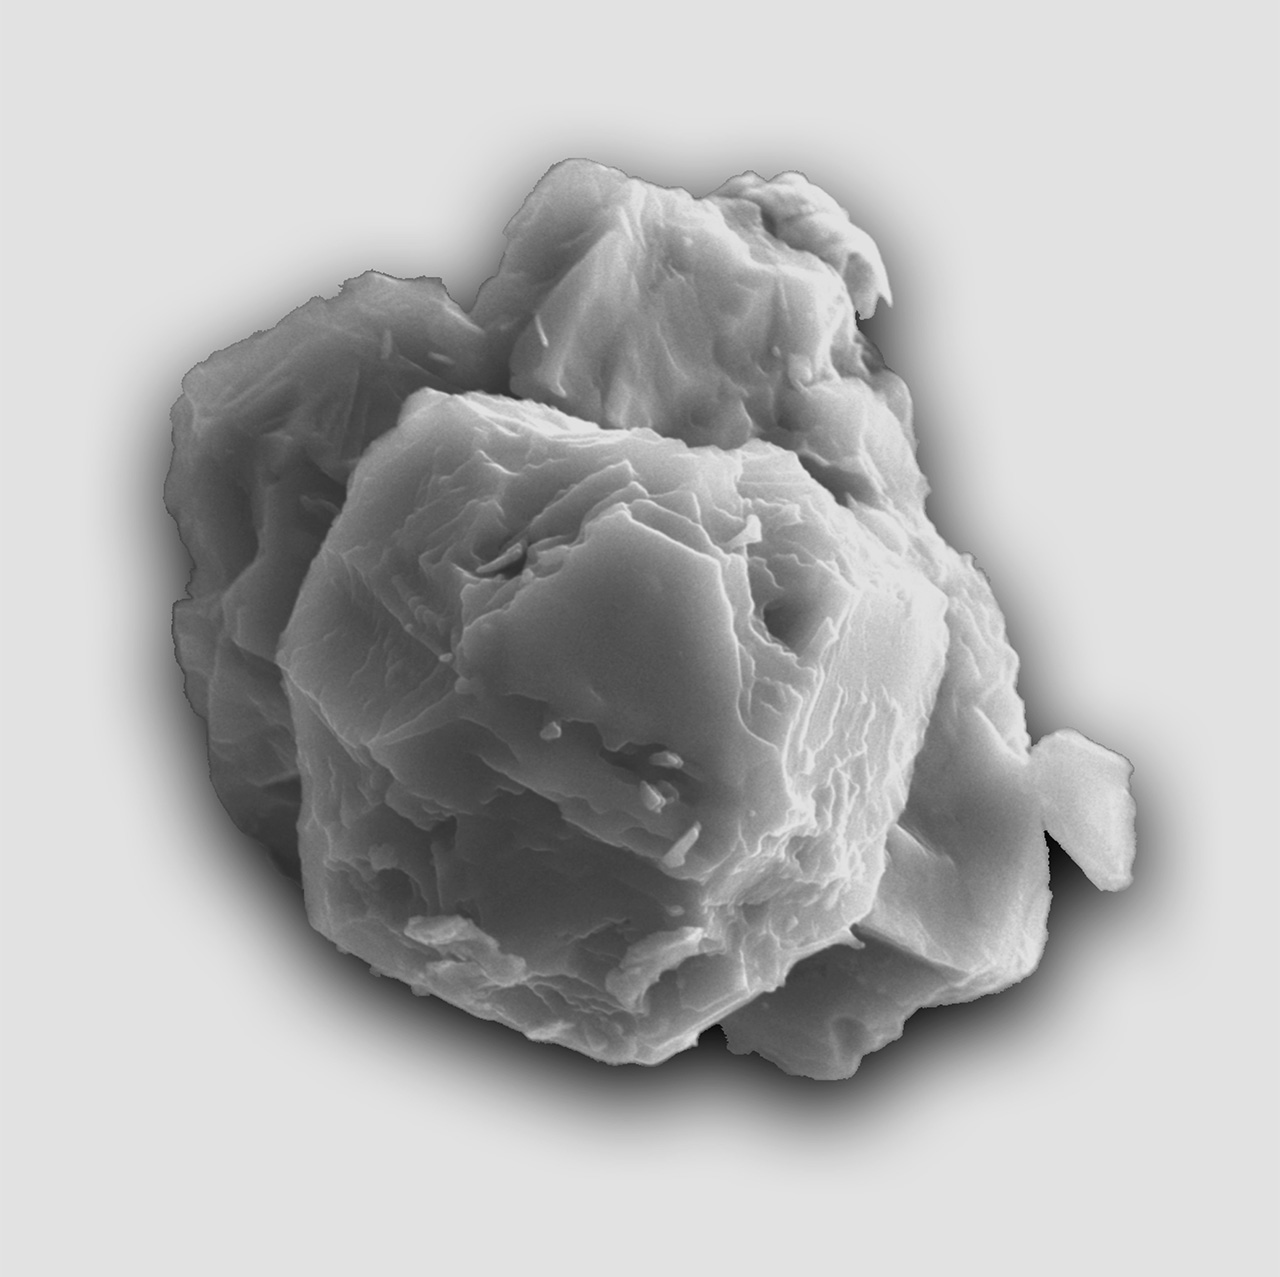 Зображення предсолярного зерена карбіду кремнію, виявленого у фрагменті Мурчісонського метеорита. Розмір частки 8 мікрон. Credit: Janaína N. Ávila